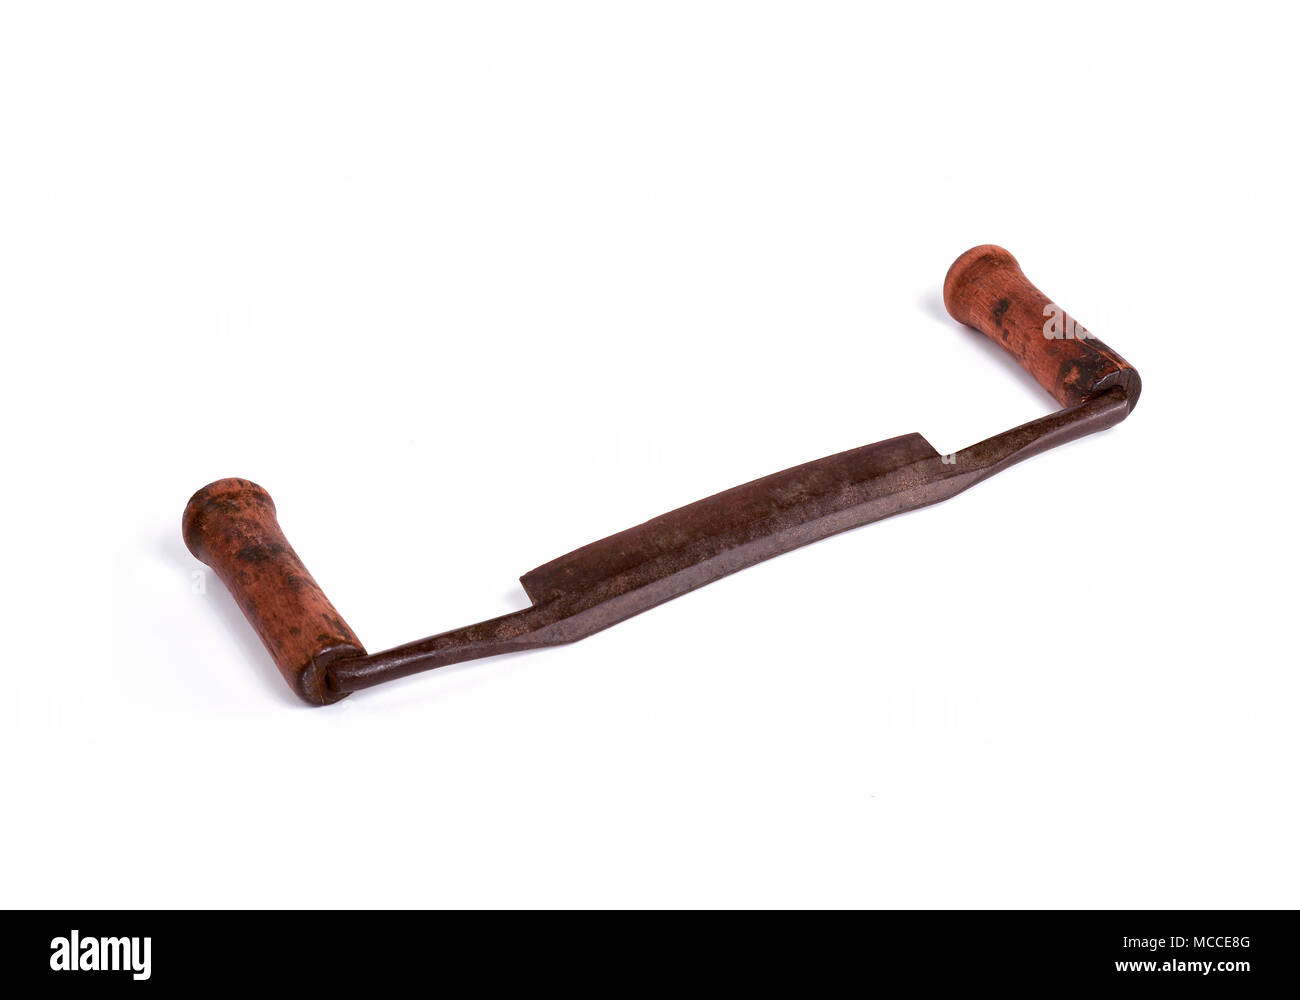 Antike Zeichnen Sie Messer, Primitive Holzbearbeitung Werkzeug mit Stahl und Holz verarbeitet. Stockfoto